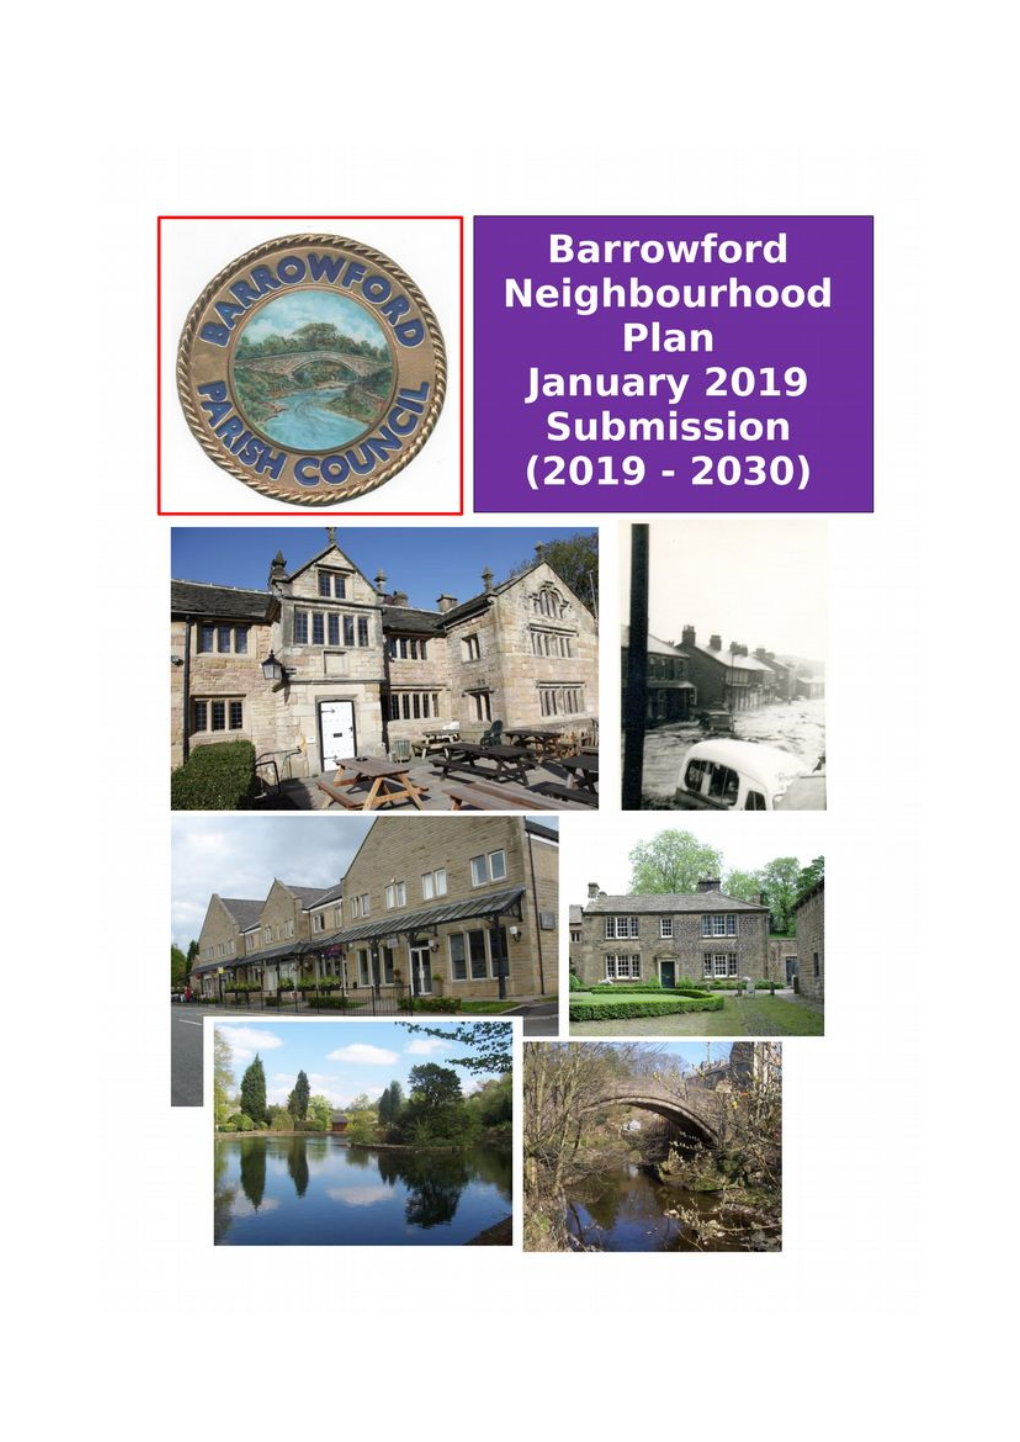 Barrowford Neighbourhood Development Plan Regulation 14 DRAFT